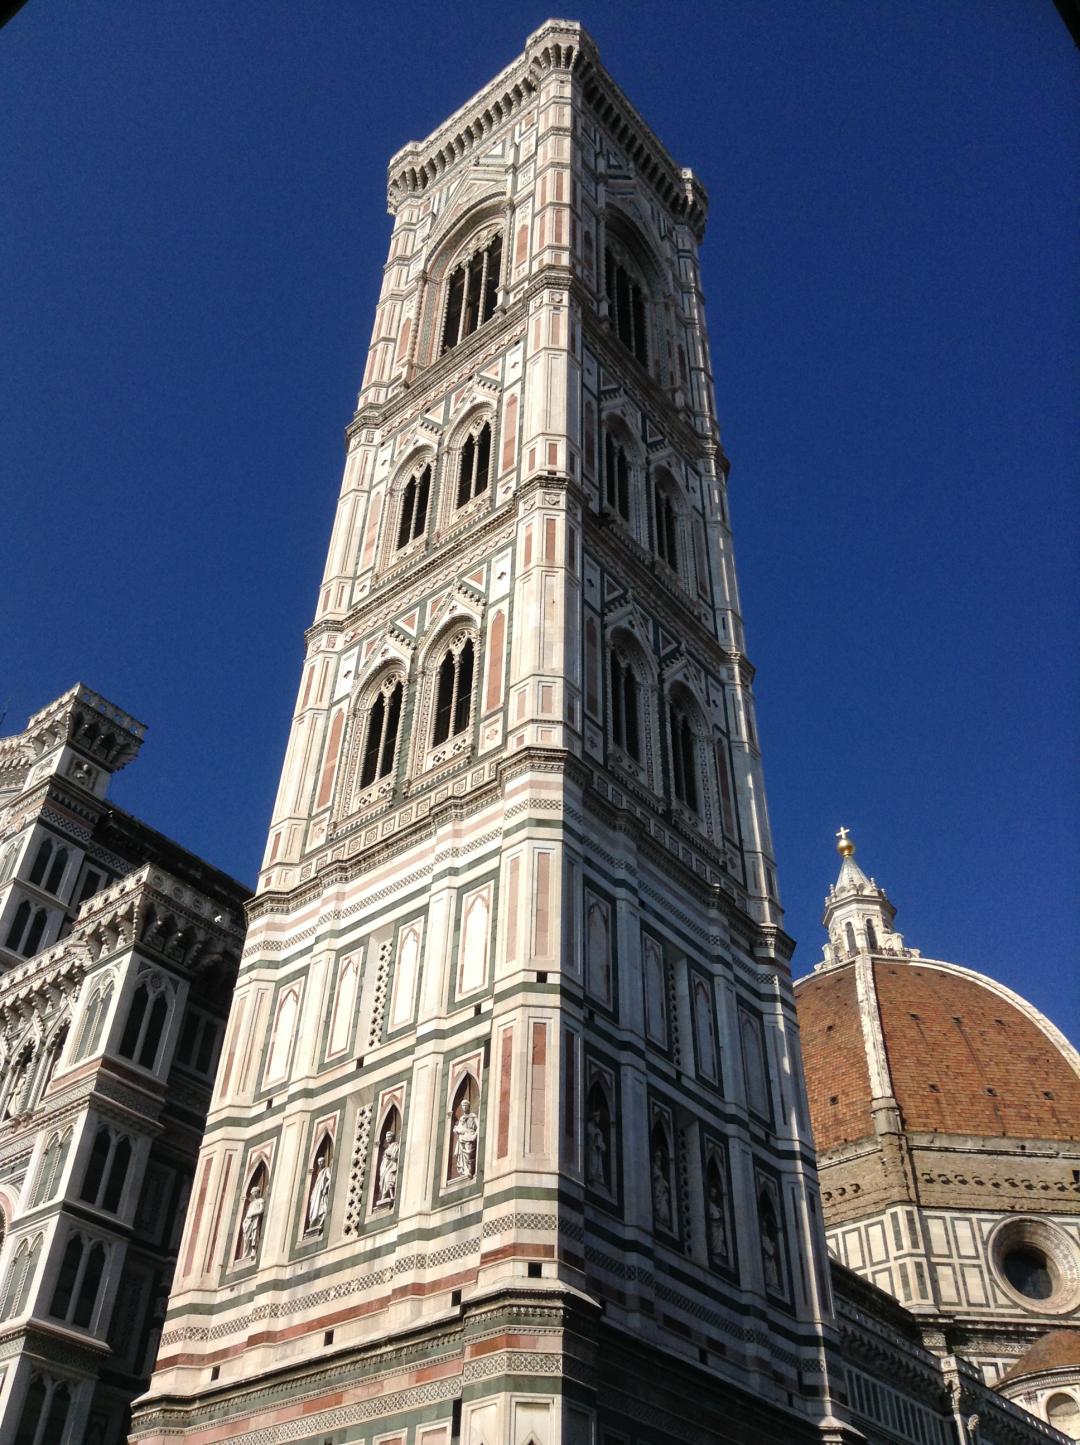 ジョットの鐘楼 フィレンツェのおすすめ観光地 名所 現地を知り尽くしたガイドによる口コミ情報 トラベルコ